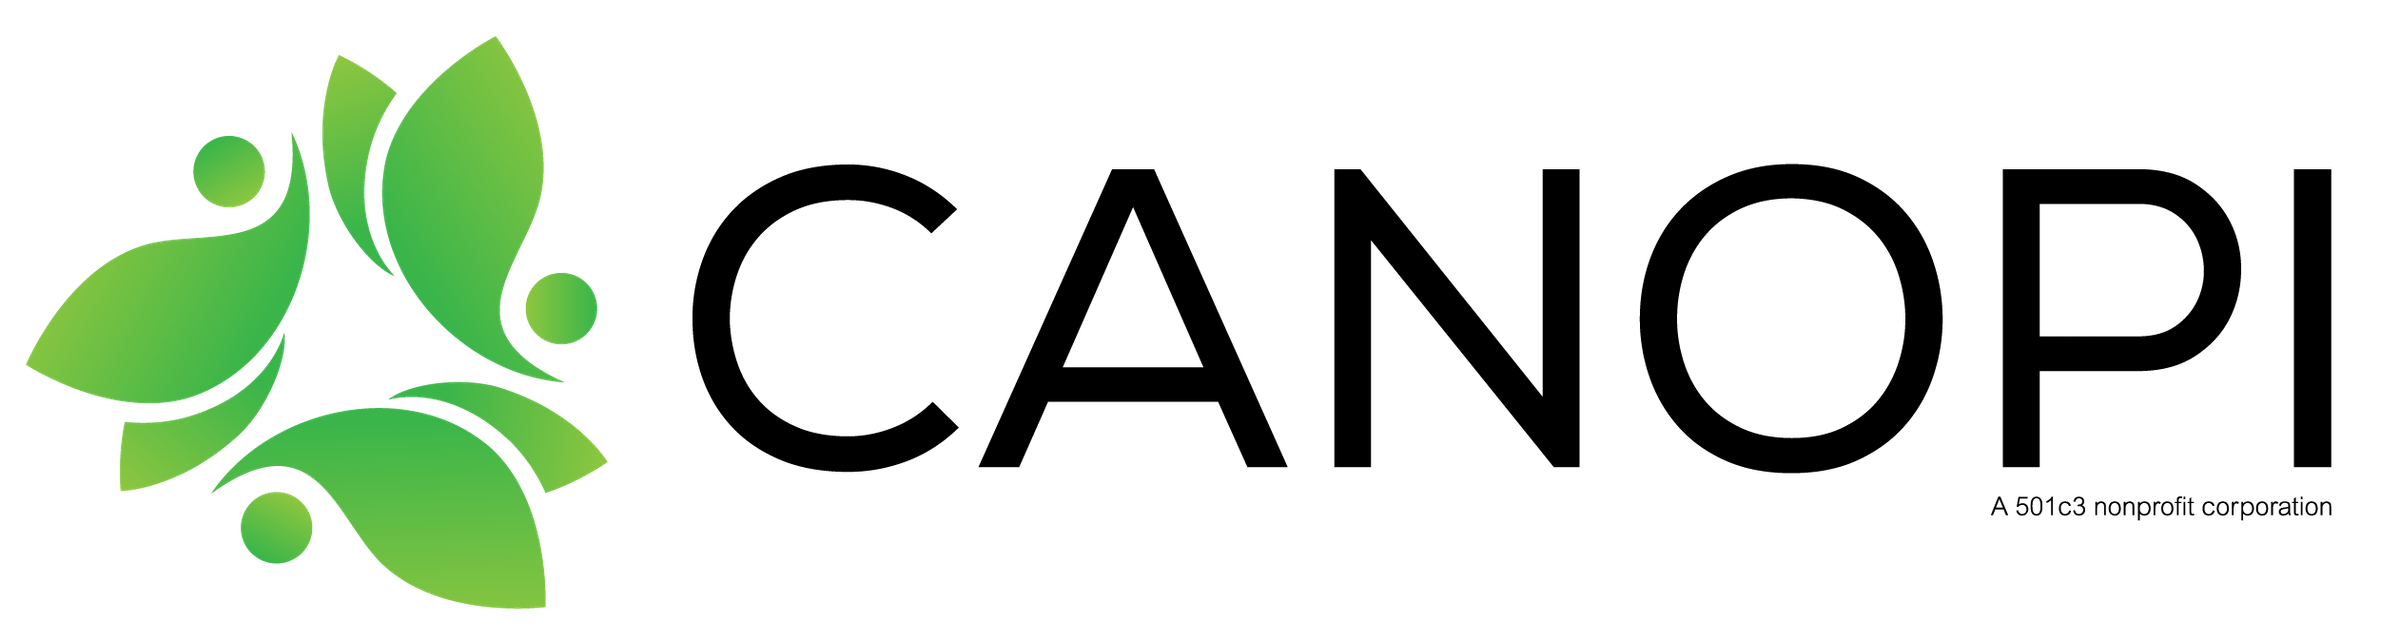 CANOPI final file basic logo 03 2500